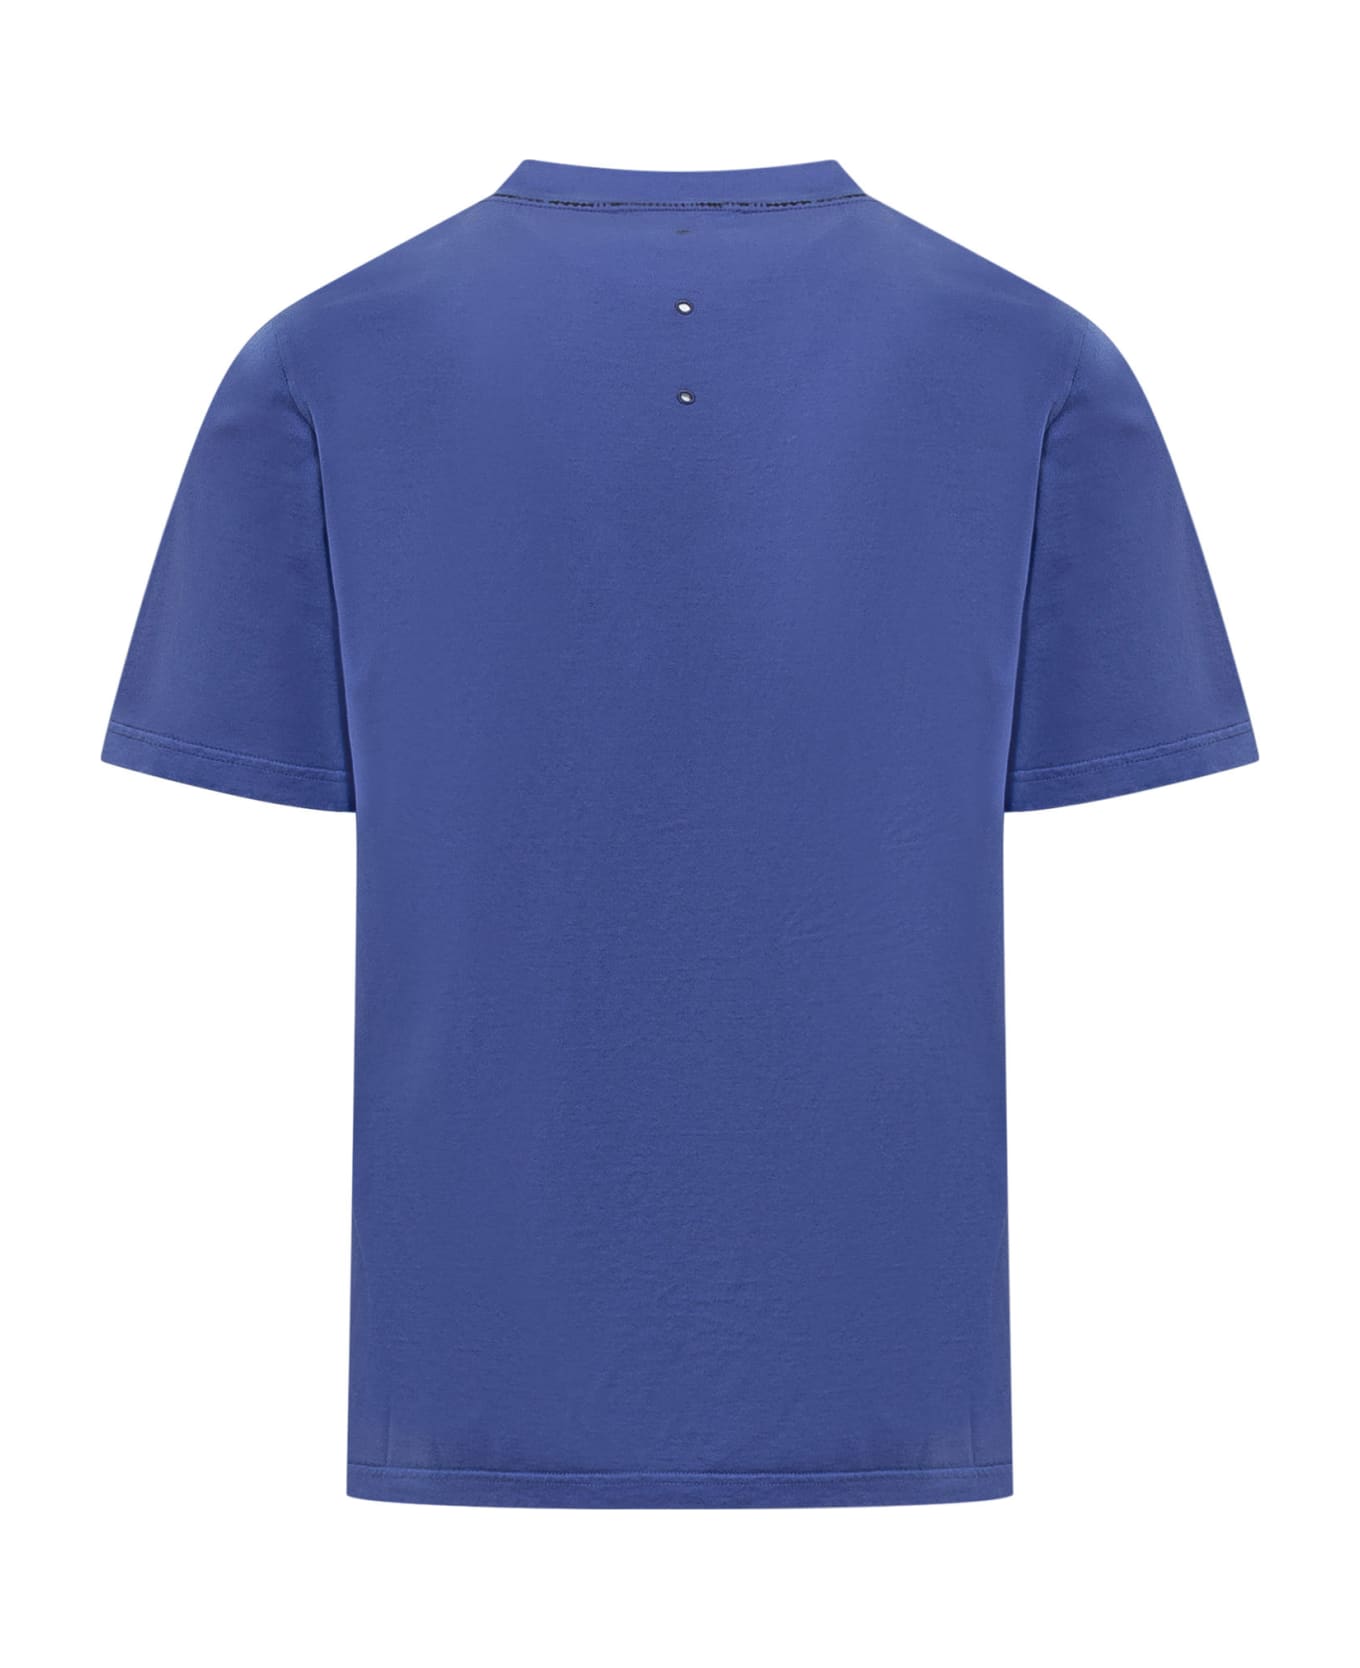 Premiata Neverwhite T-shirt - BLUE